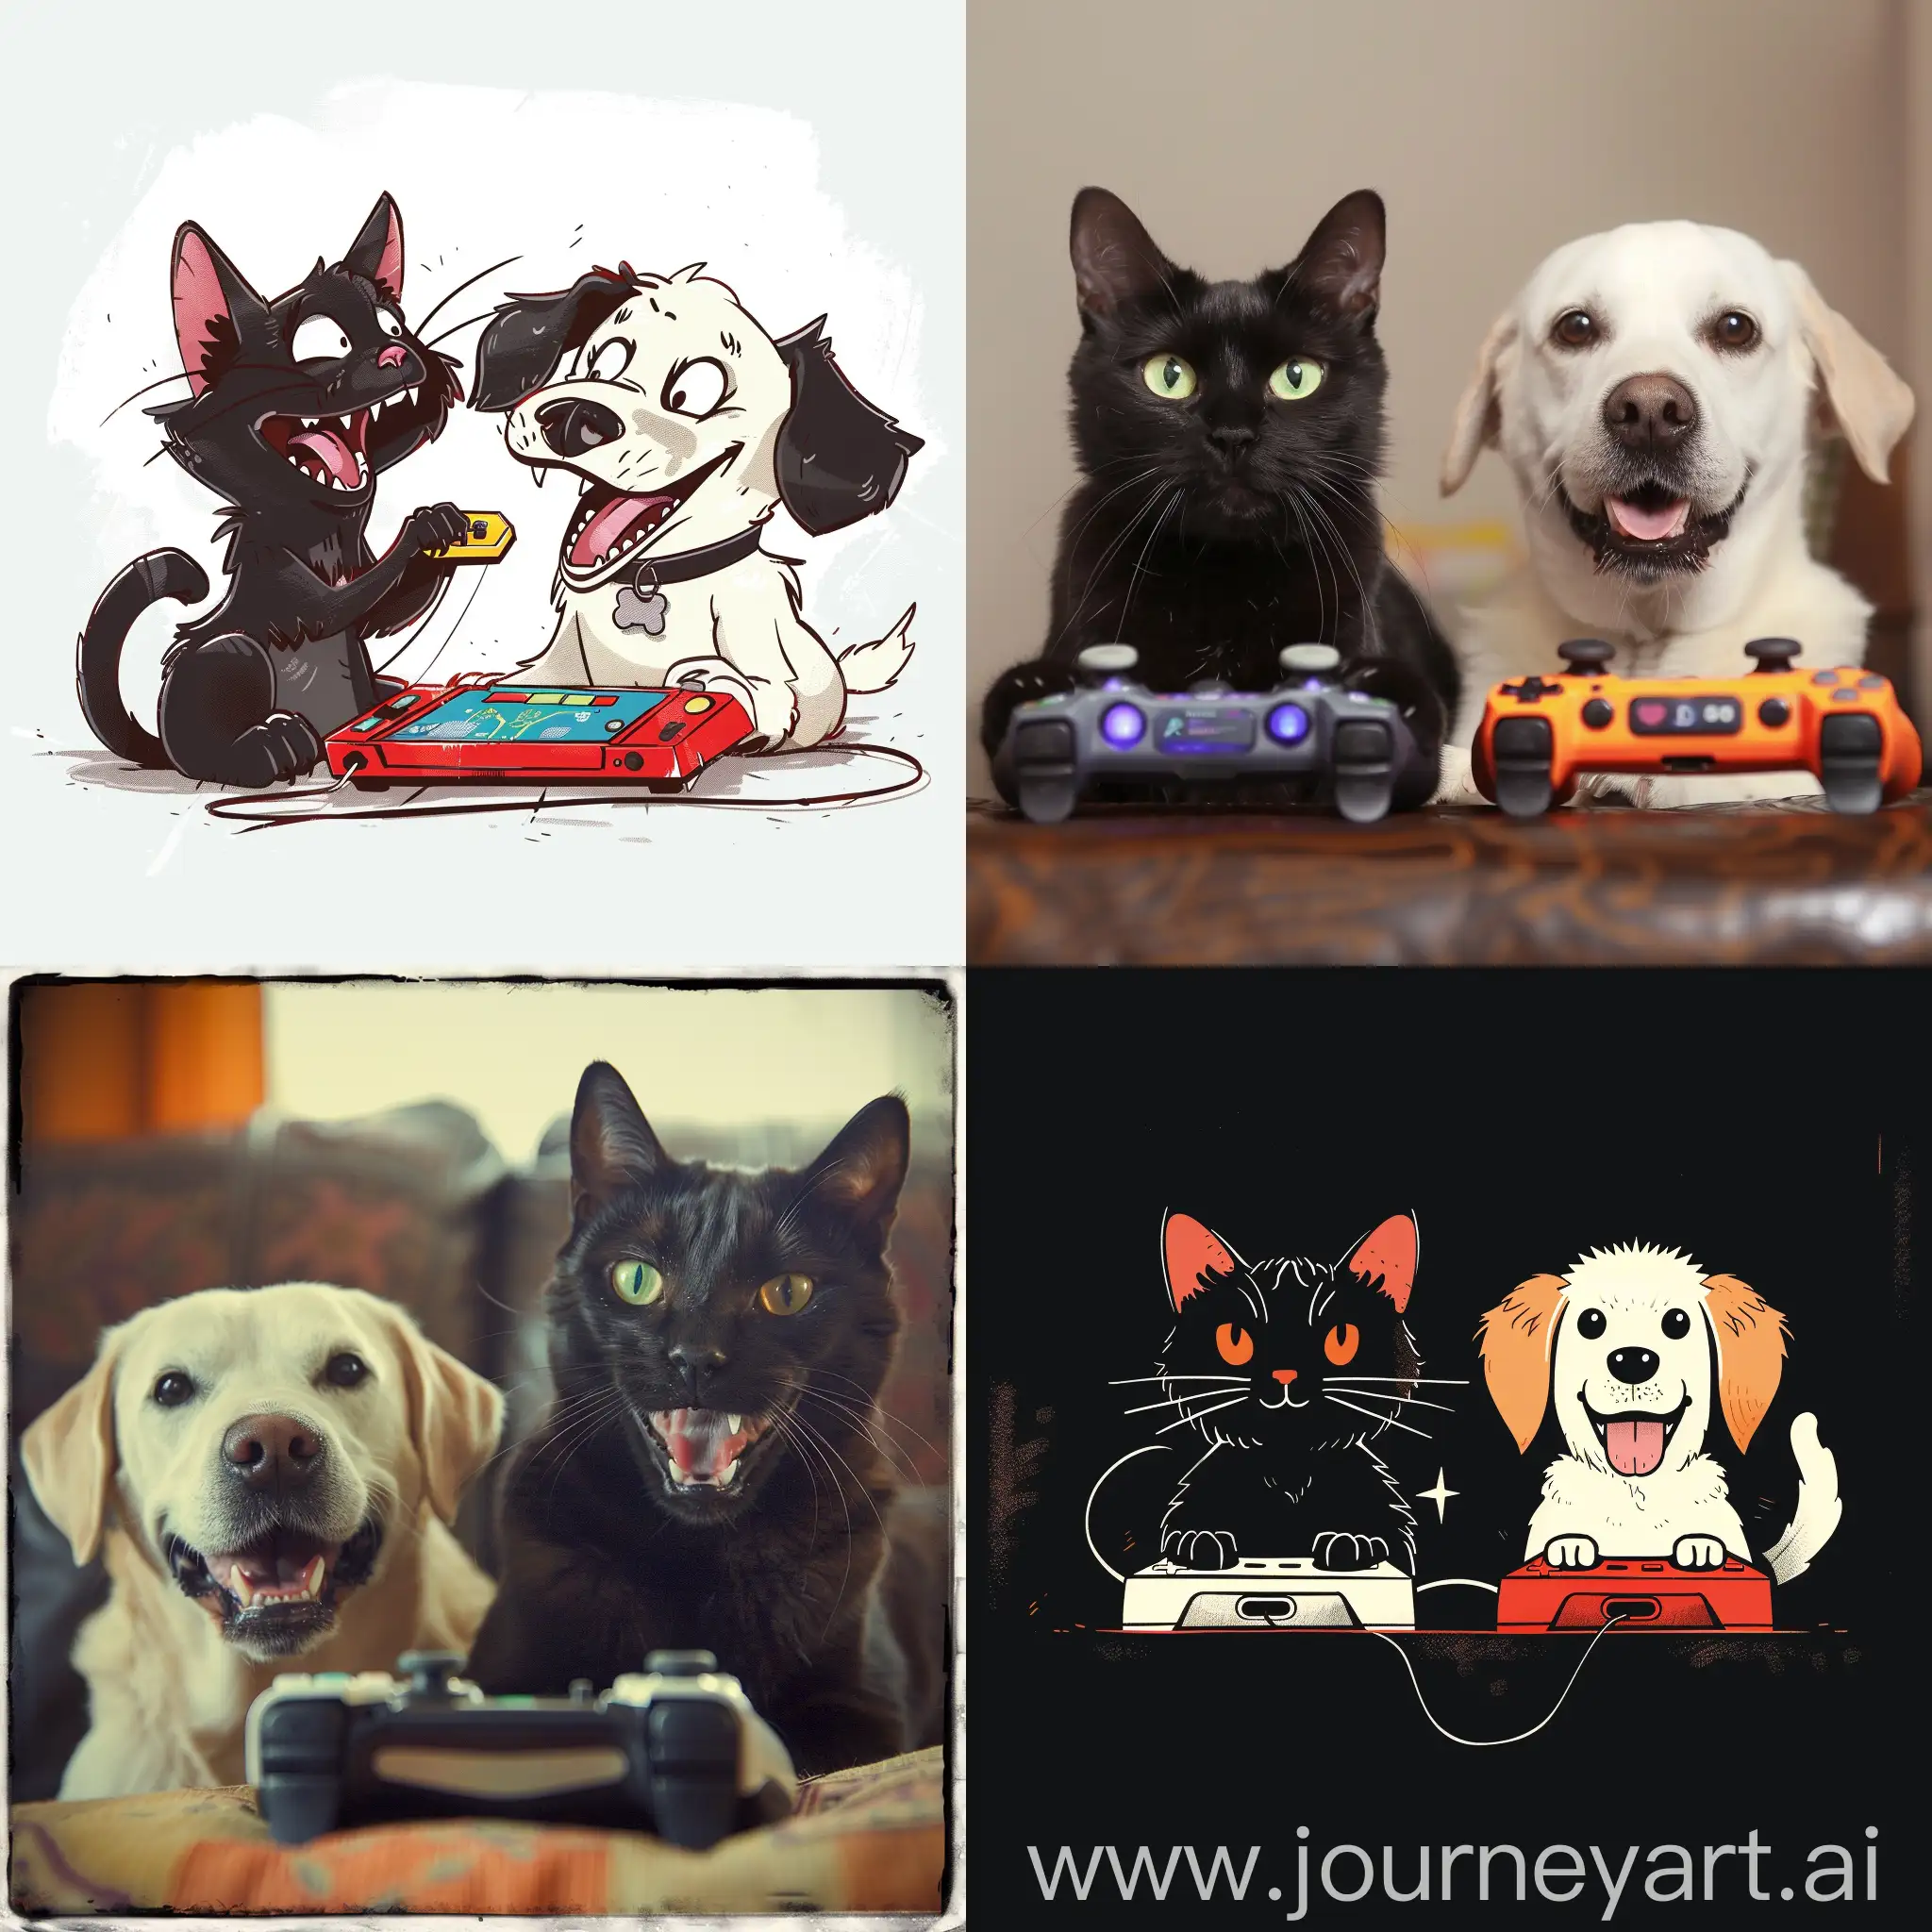 Чёрный кот и белая собака играют в видеоигры